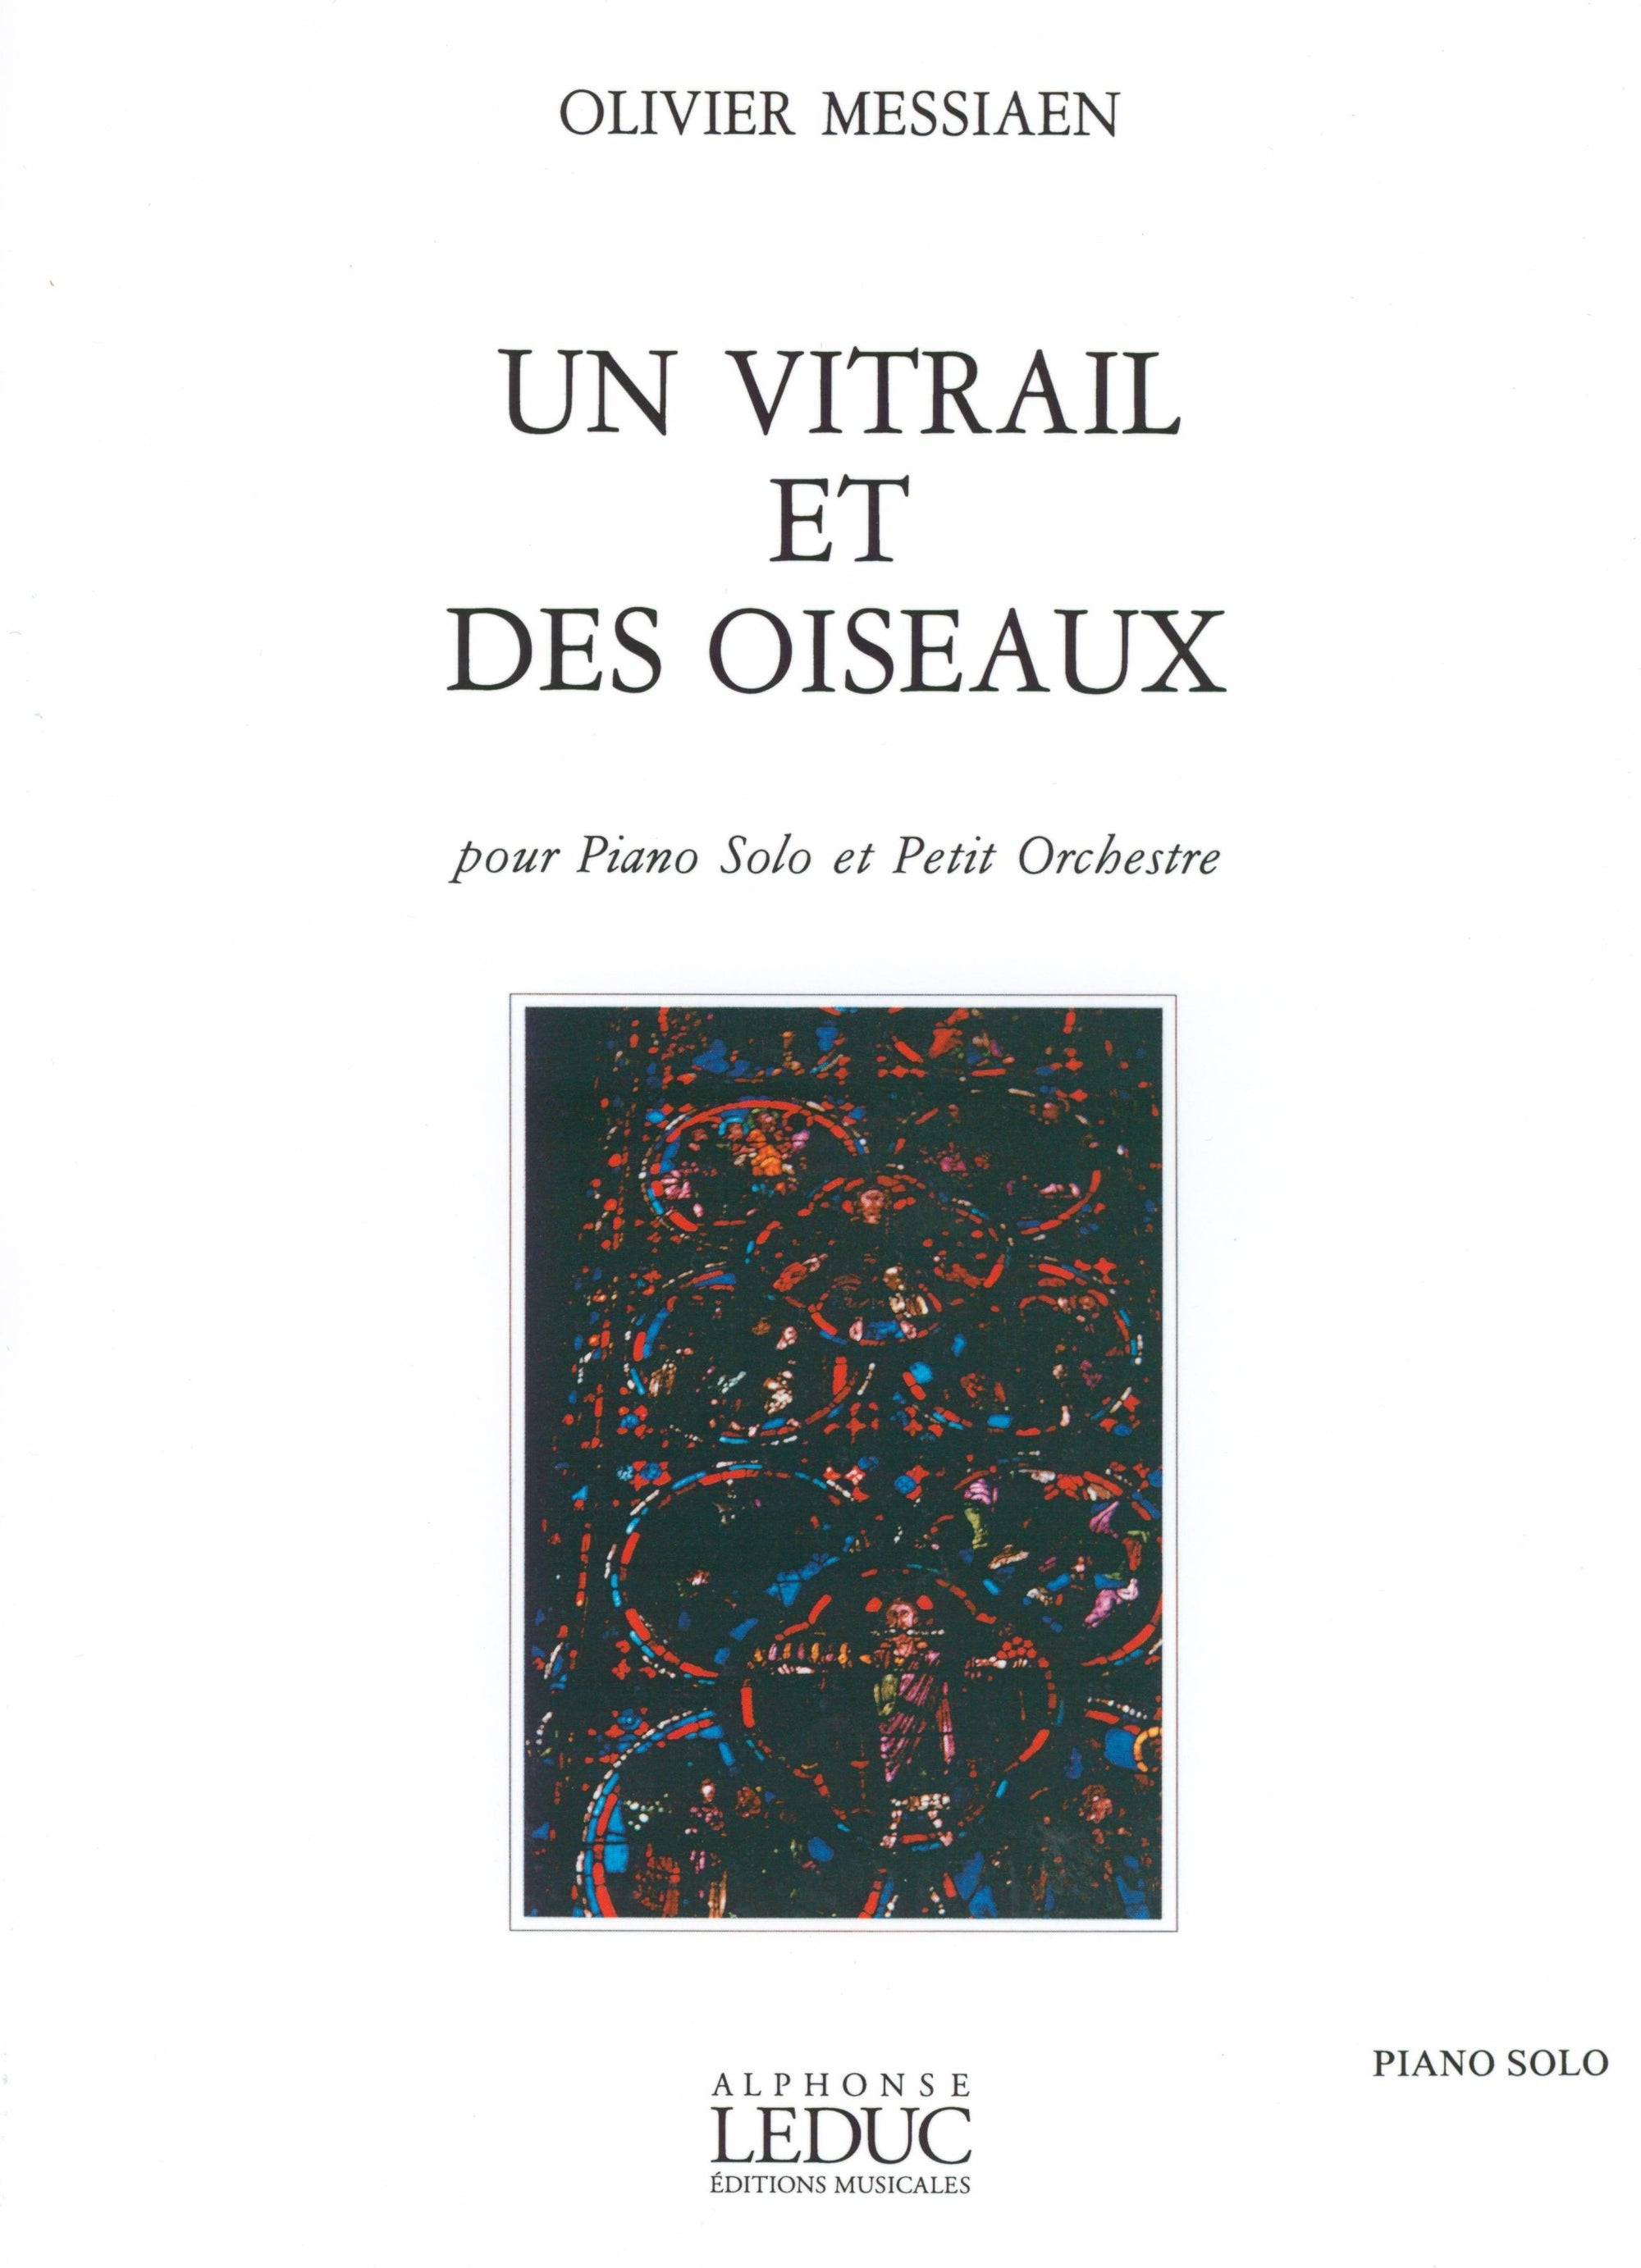 Messiaen: Un Vitrail et des oiseaux